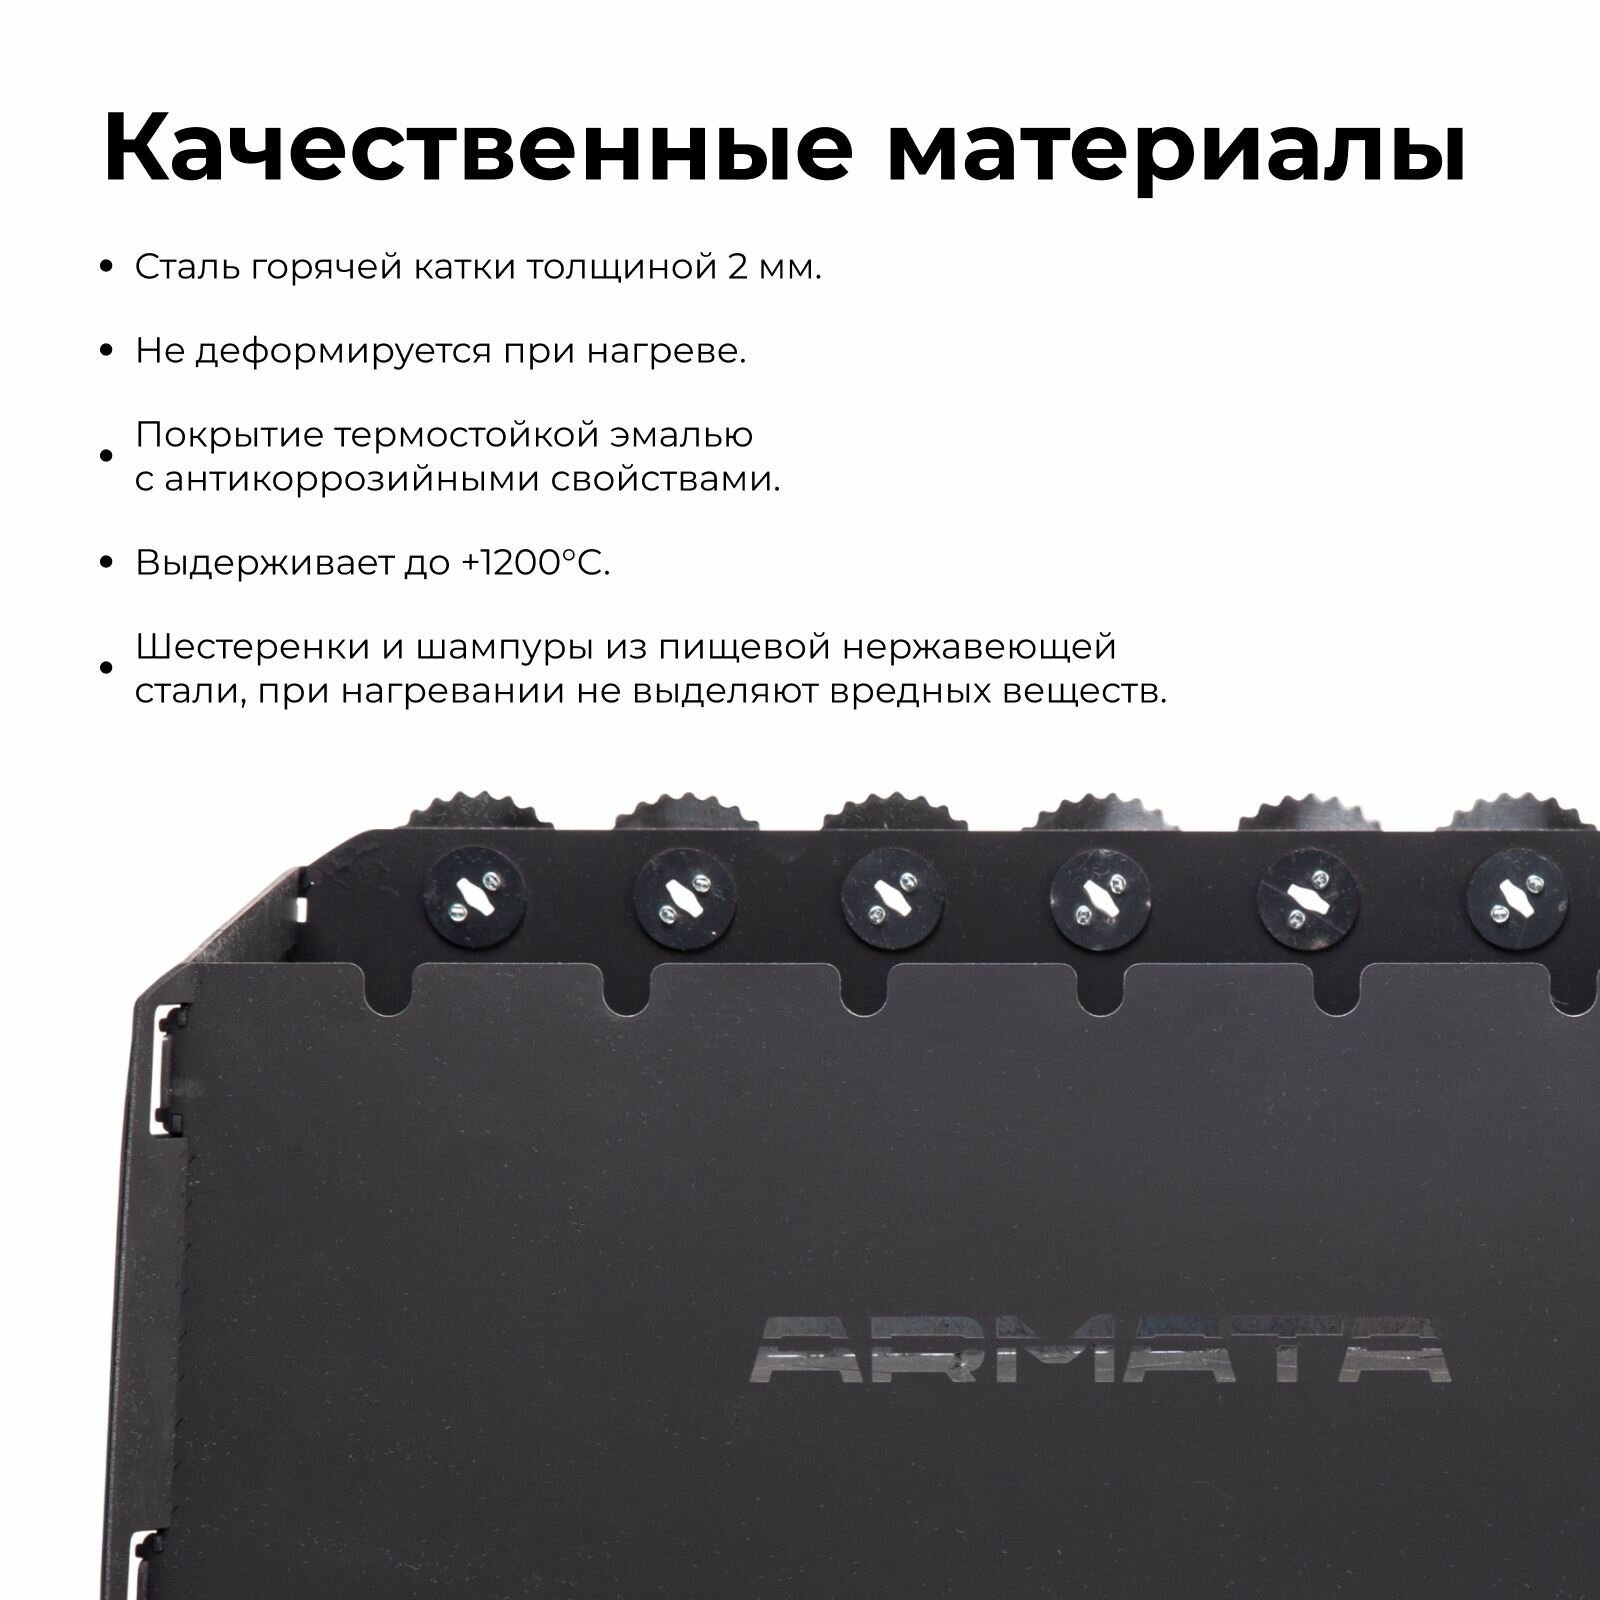 Smart-мангал Armata в комплектации Ultra c ножками и фирменной сумкой